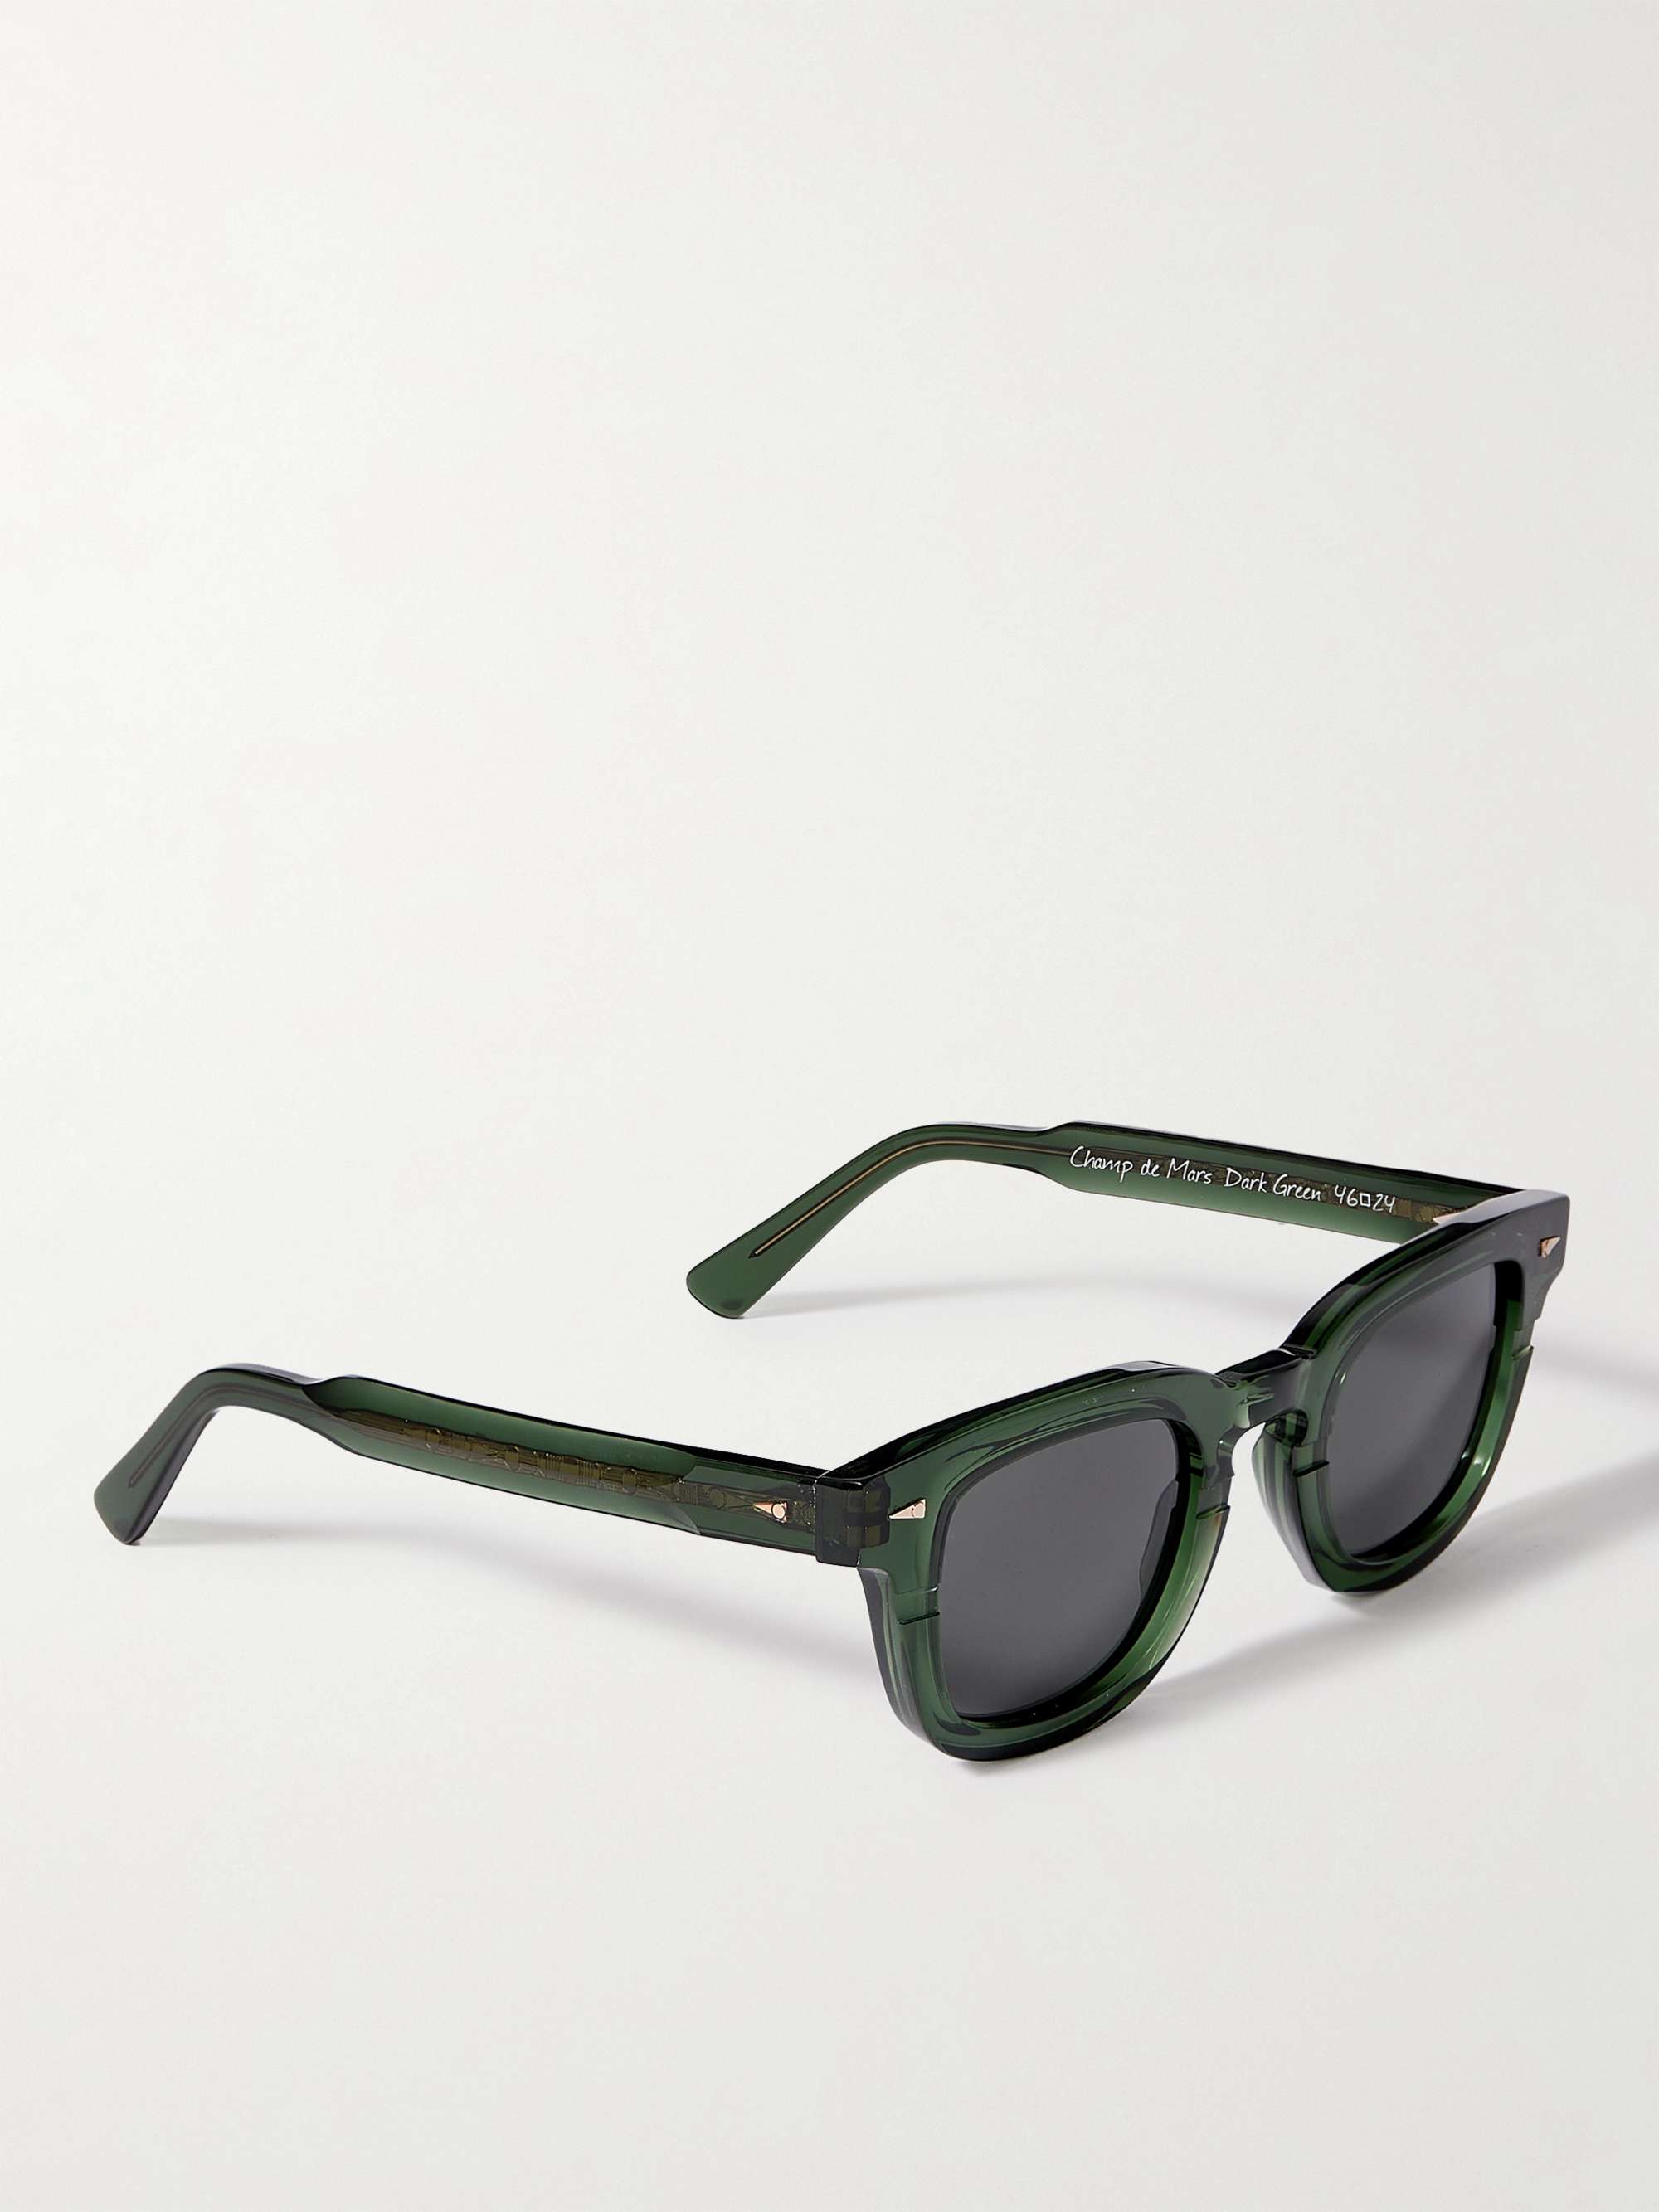 AHLEM Champ de Mars D-Frame Acetate Sunglasses